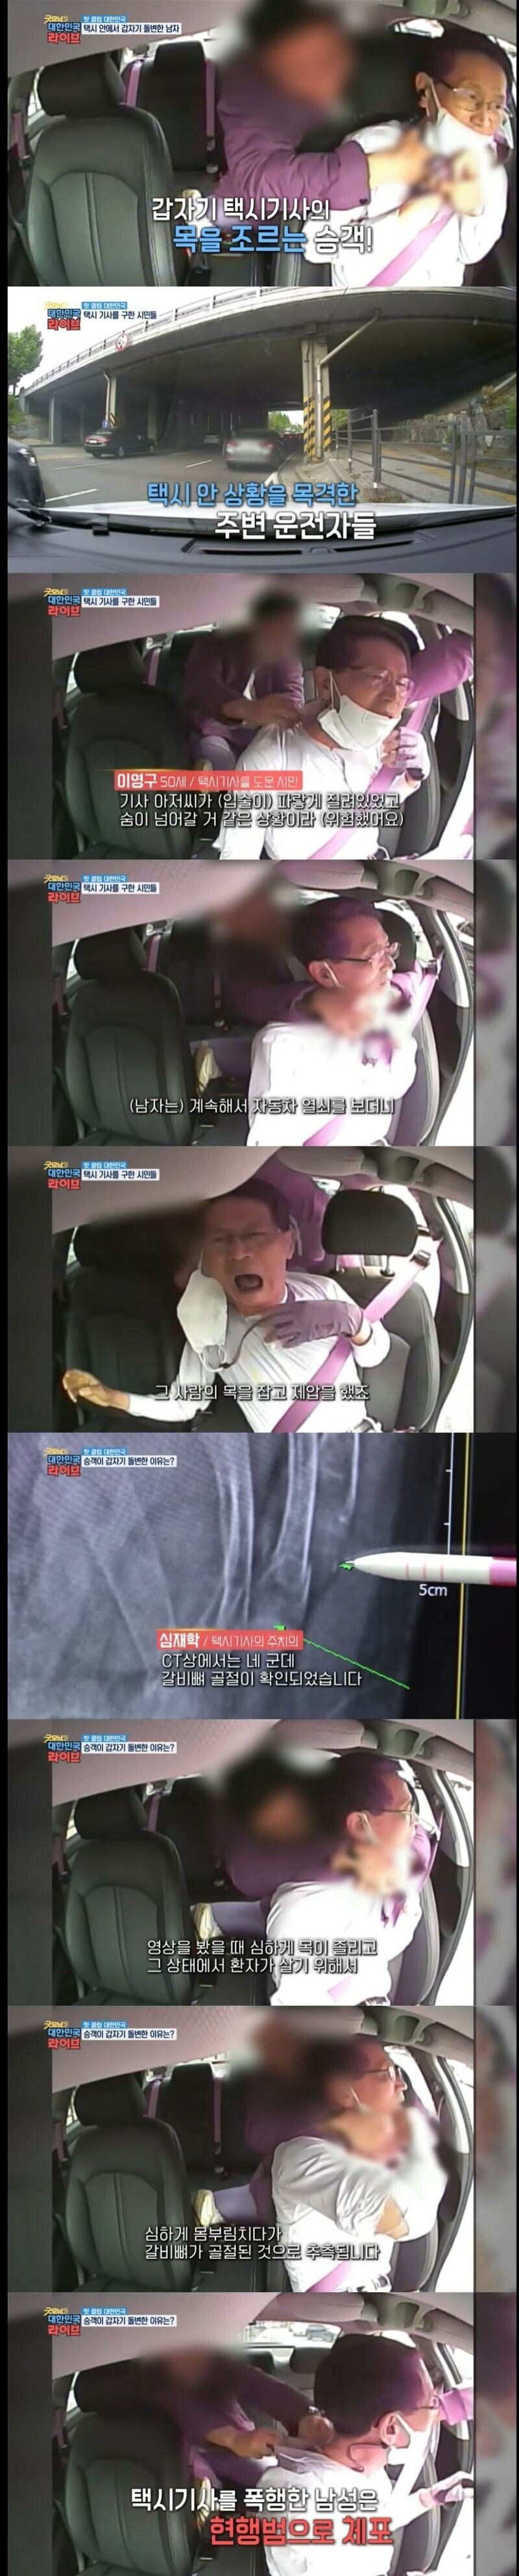 서울 용산구 택시기사 살인 미수 사건 - 짤티비